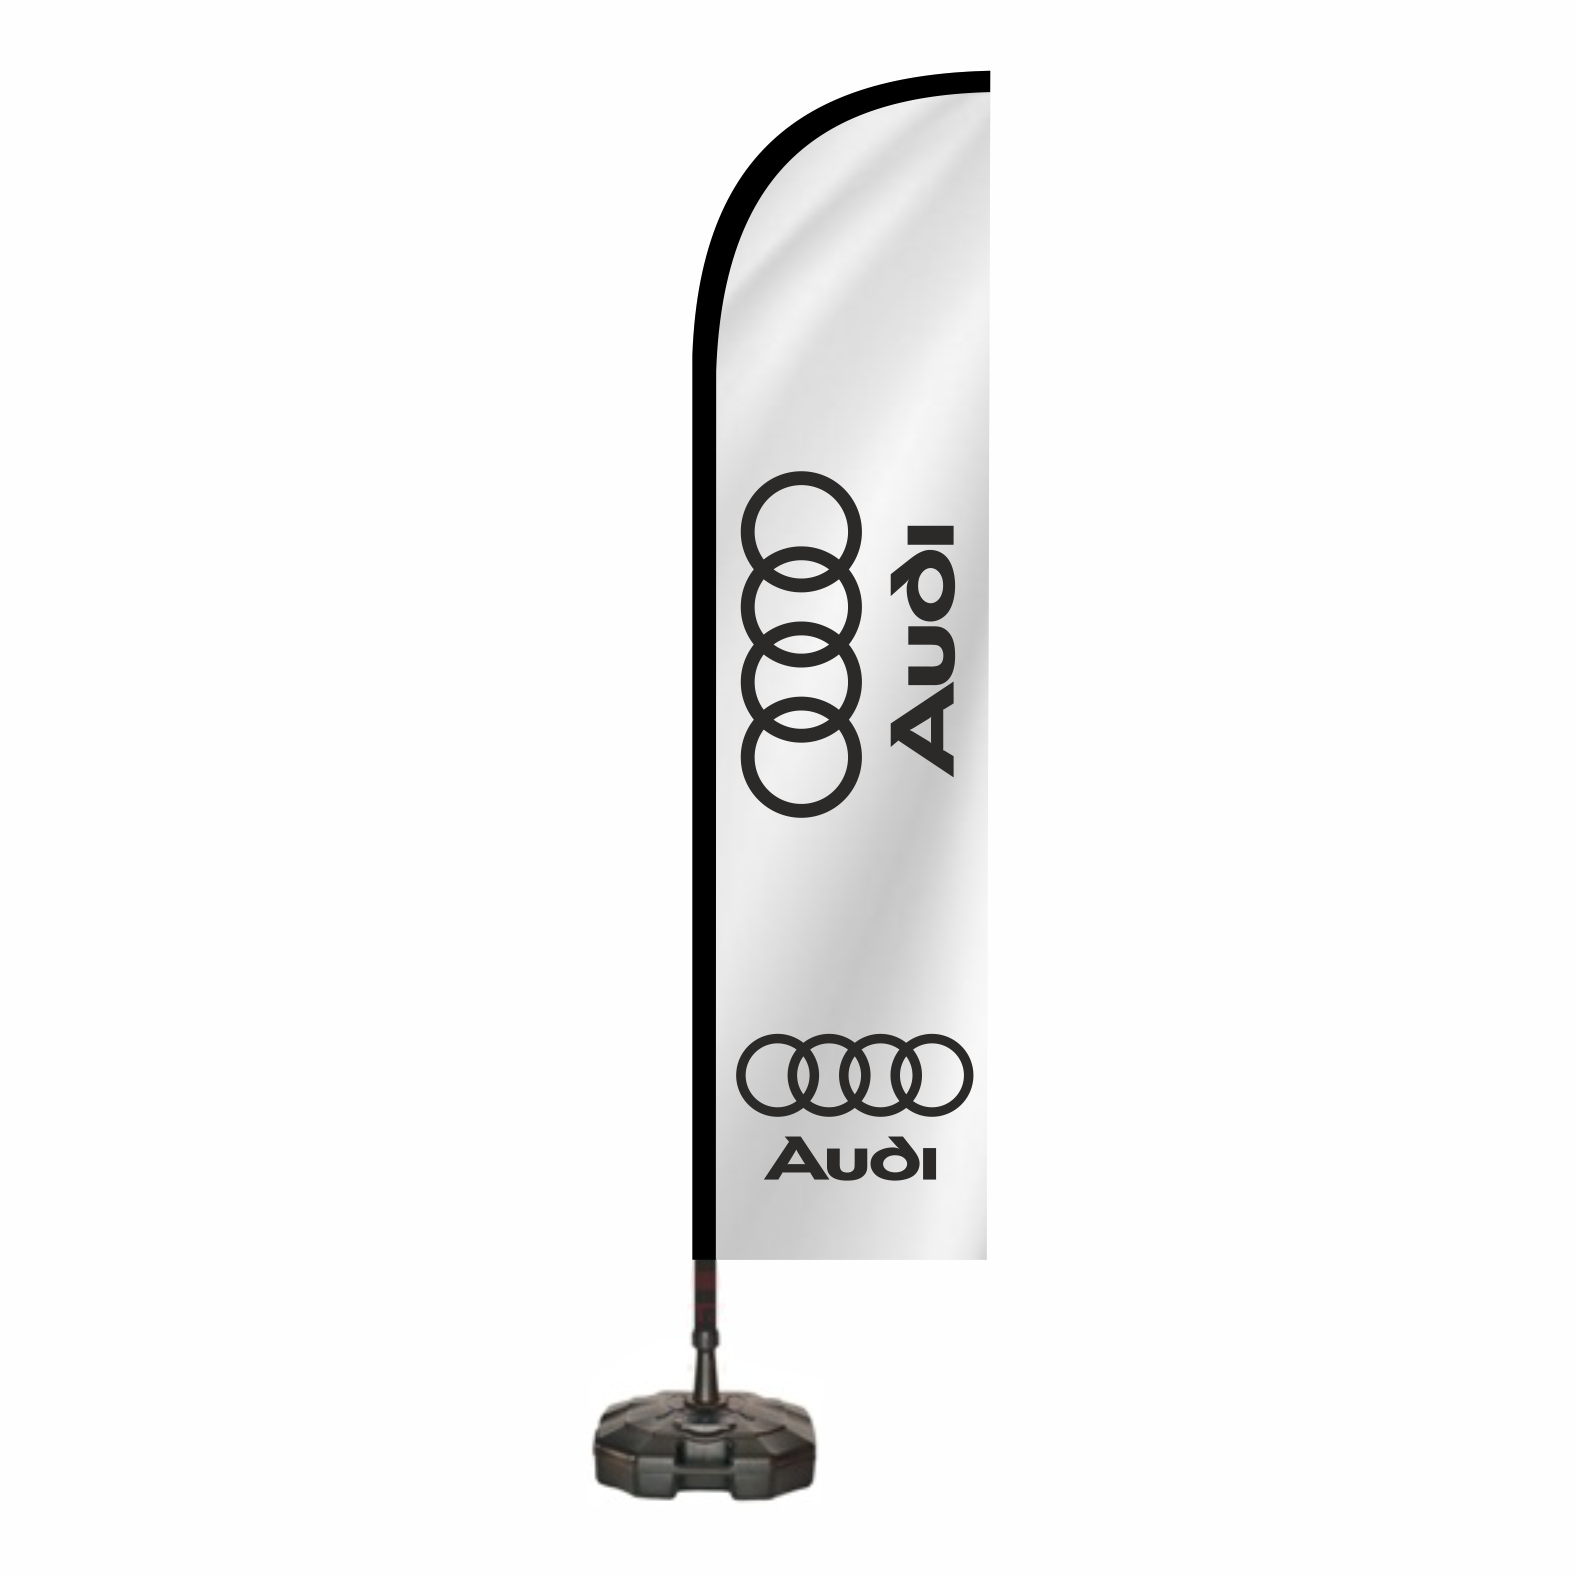 Audi Reklam Bayra Sat Yerleri